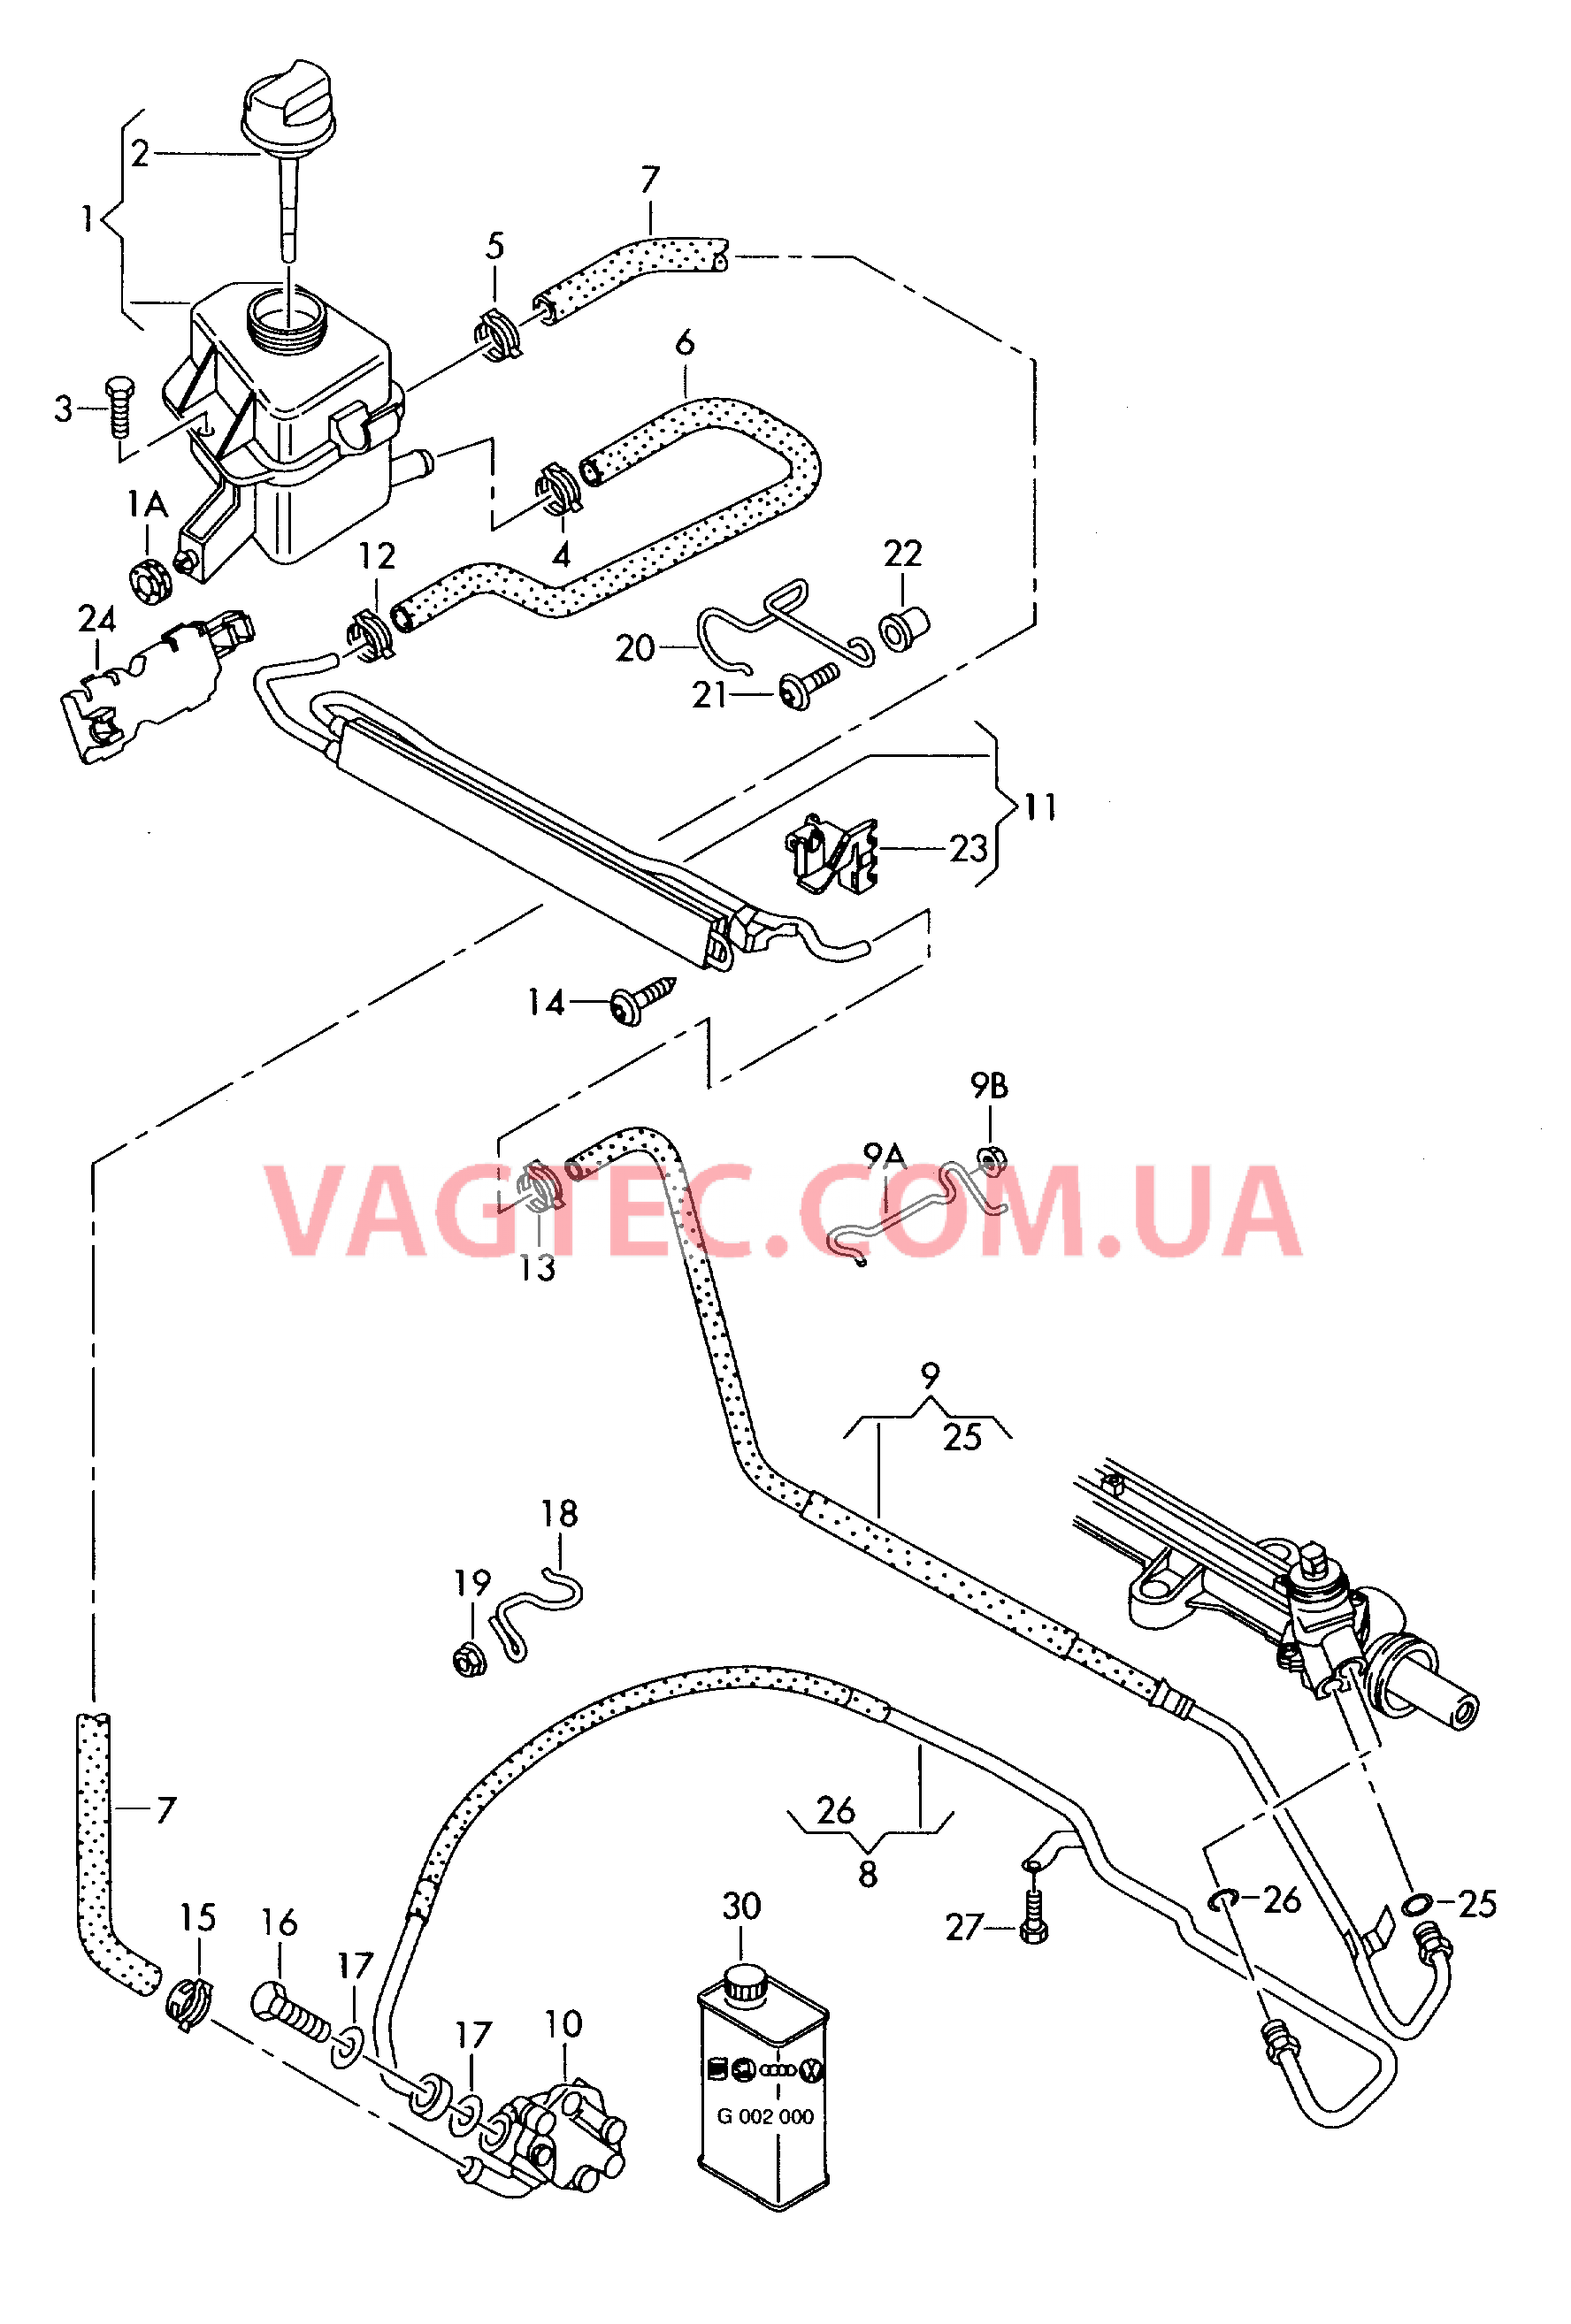 Масляный бачок с соединительными деталями, шлангами  для ГУРа  для VOLKSWAGEN Transporter 2006-1